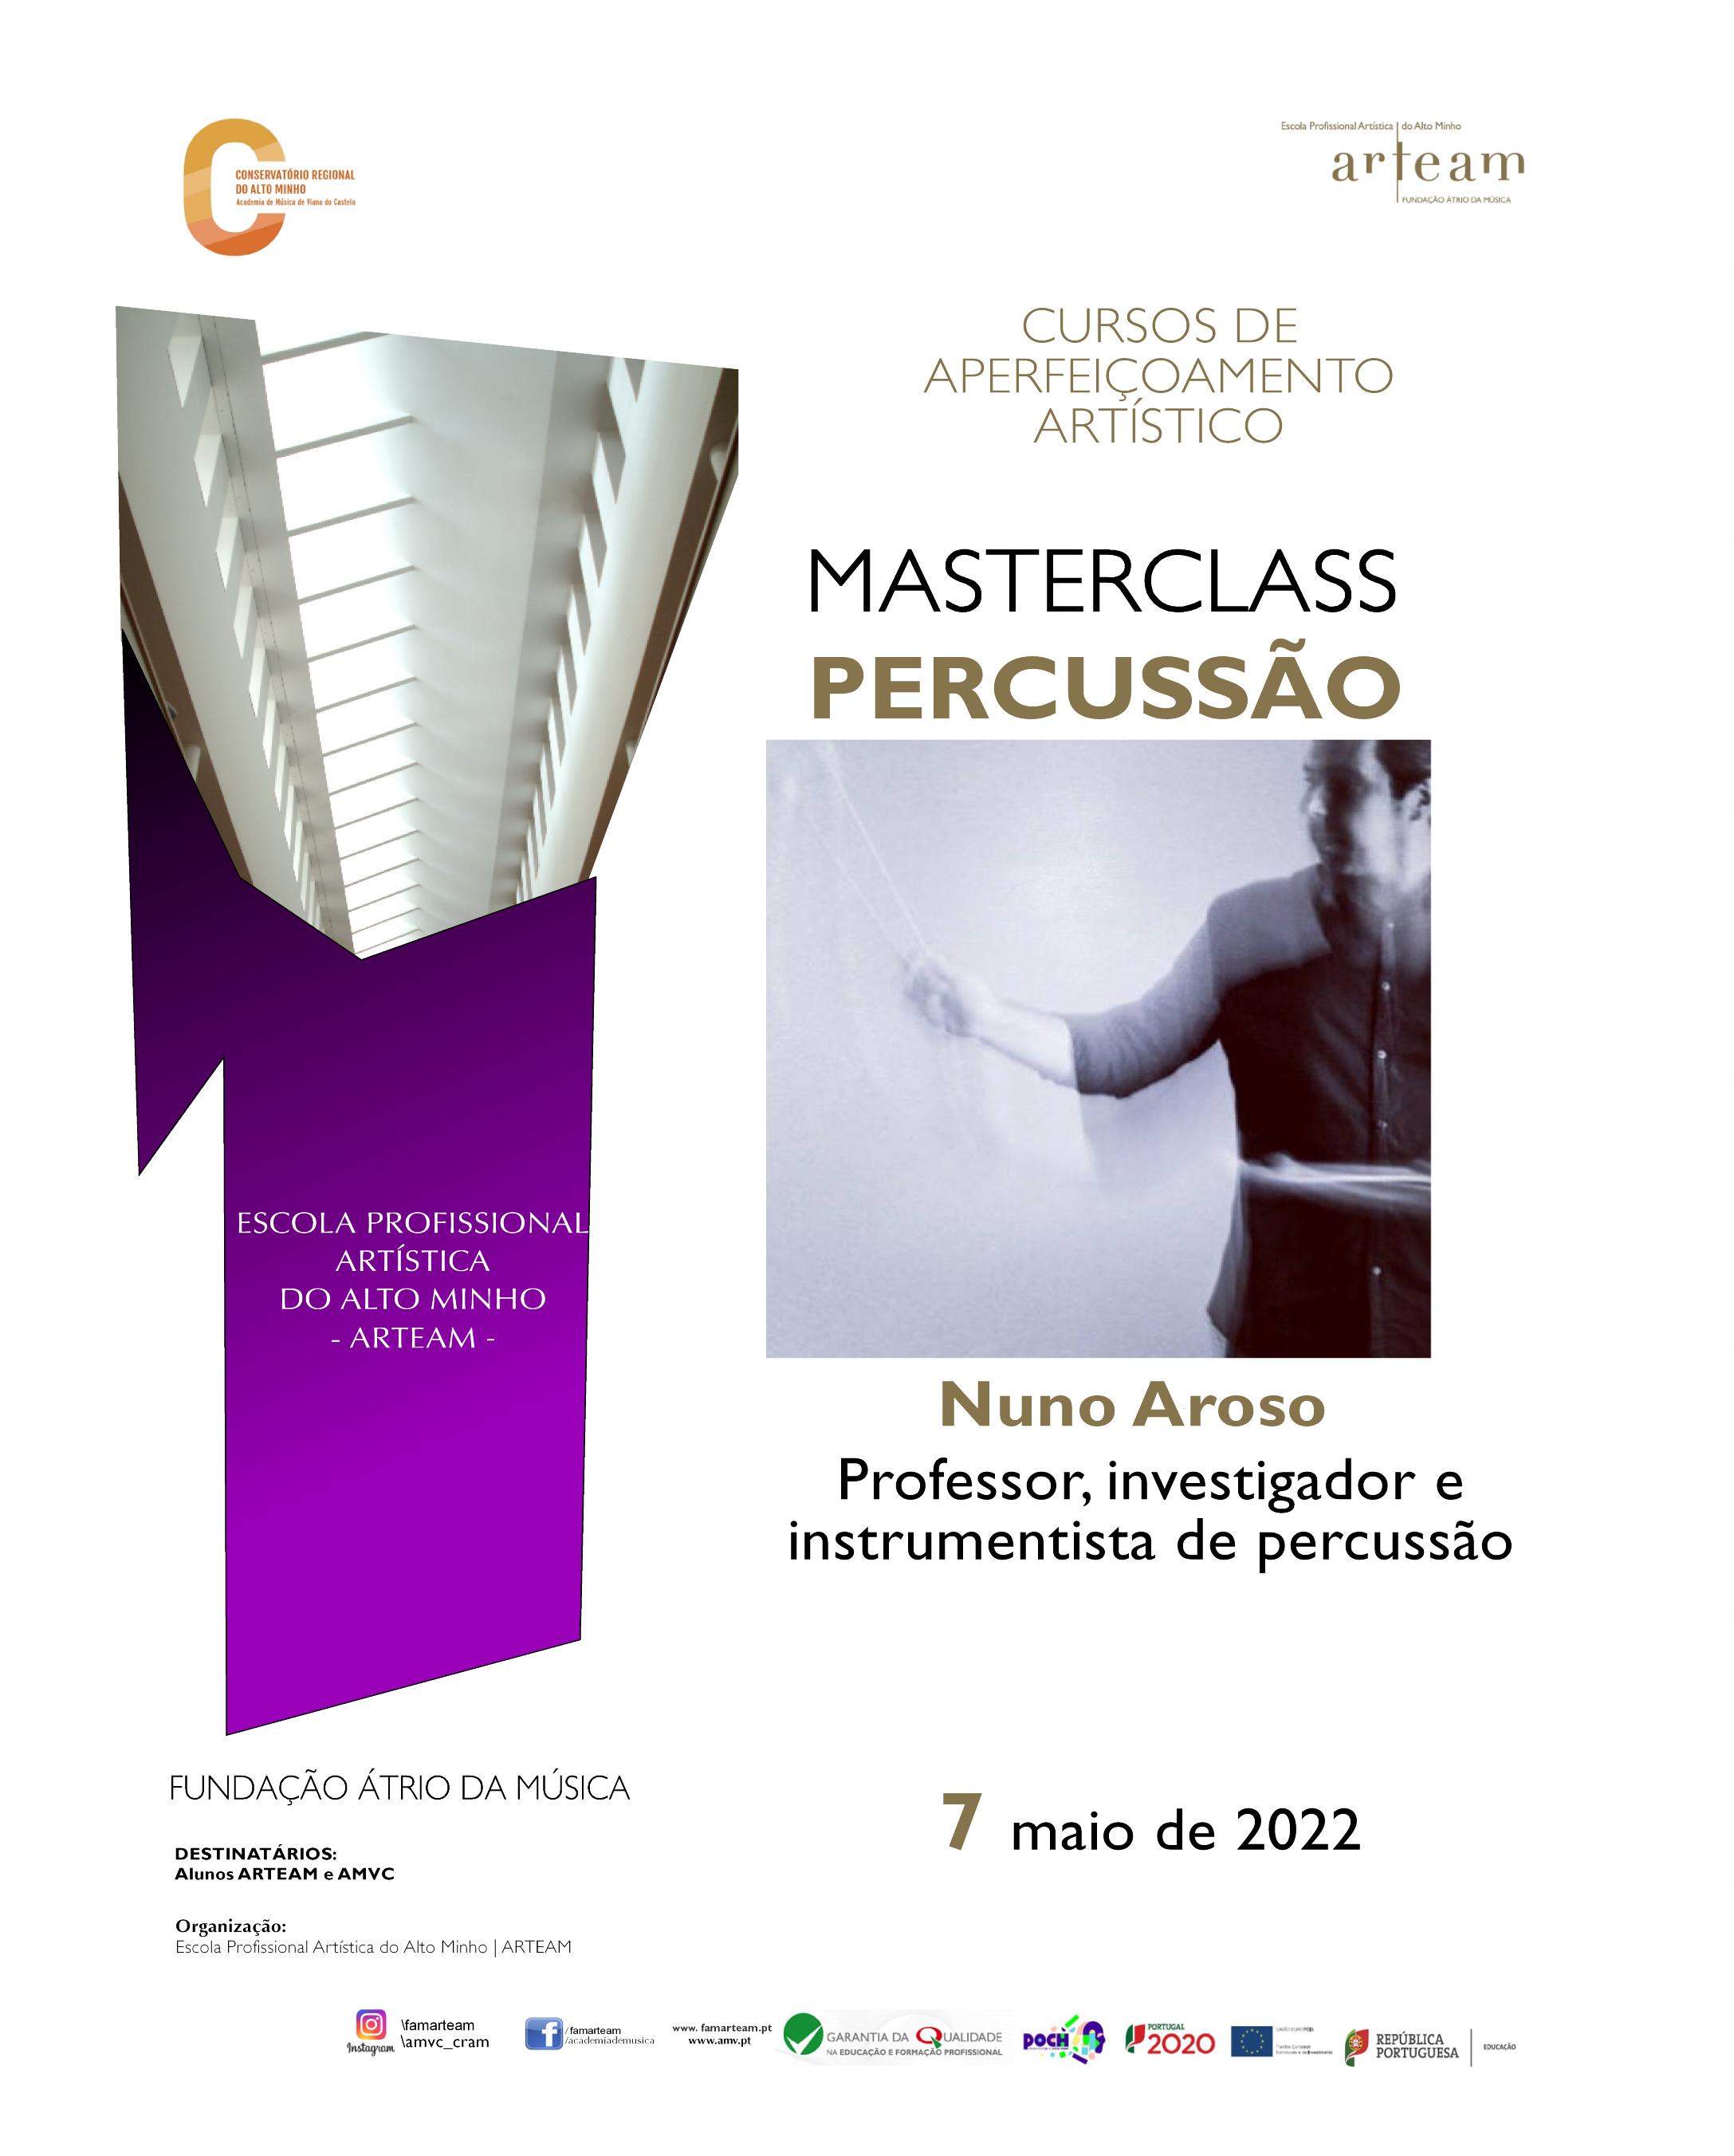 Masterclass de percussão por Nuno Aroso